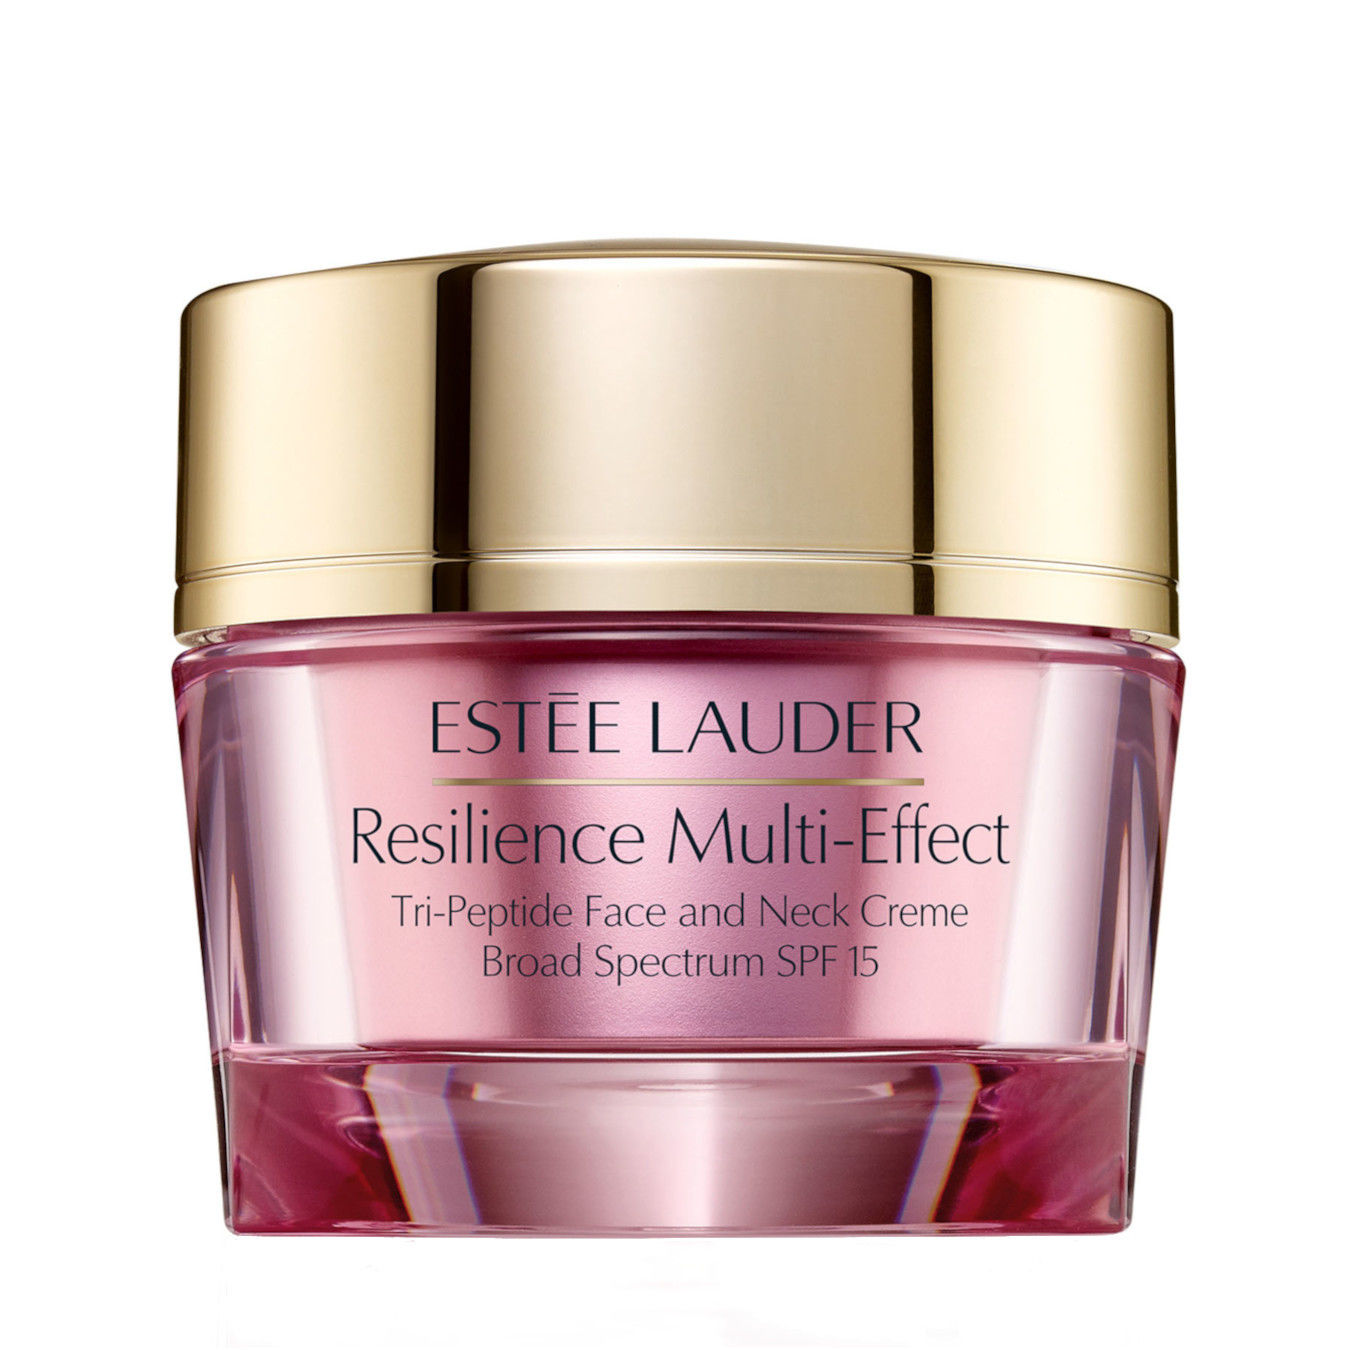 Estée Lauder Resilience Multi-Effect SPF15 Face and Neck Creme dry skin 50ml Damen von Estée Lauder